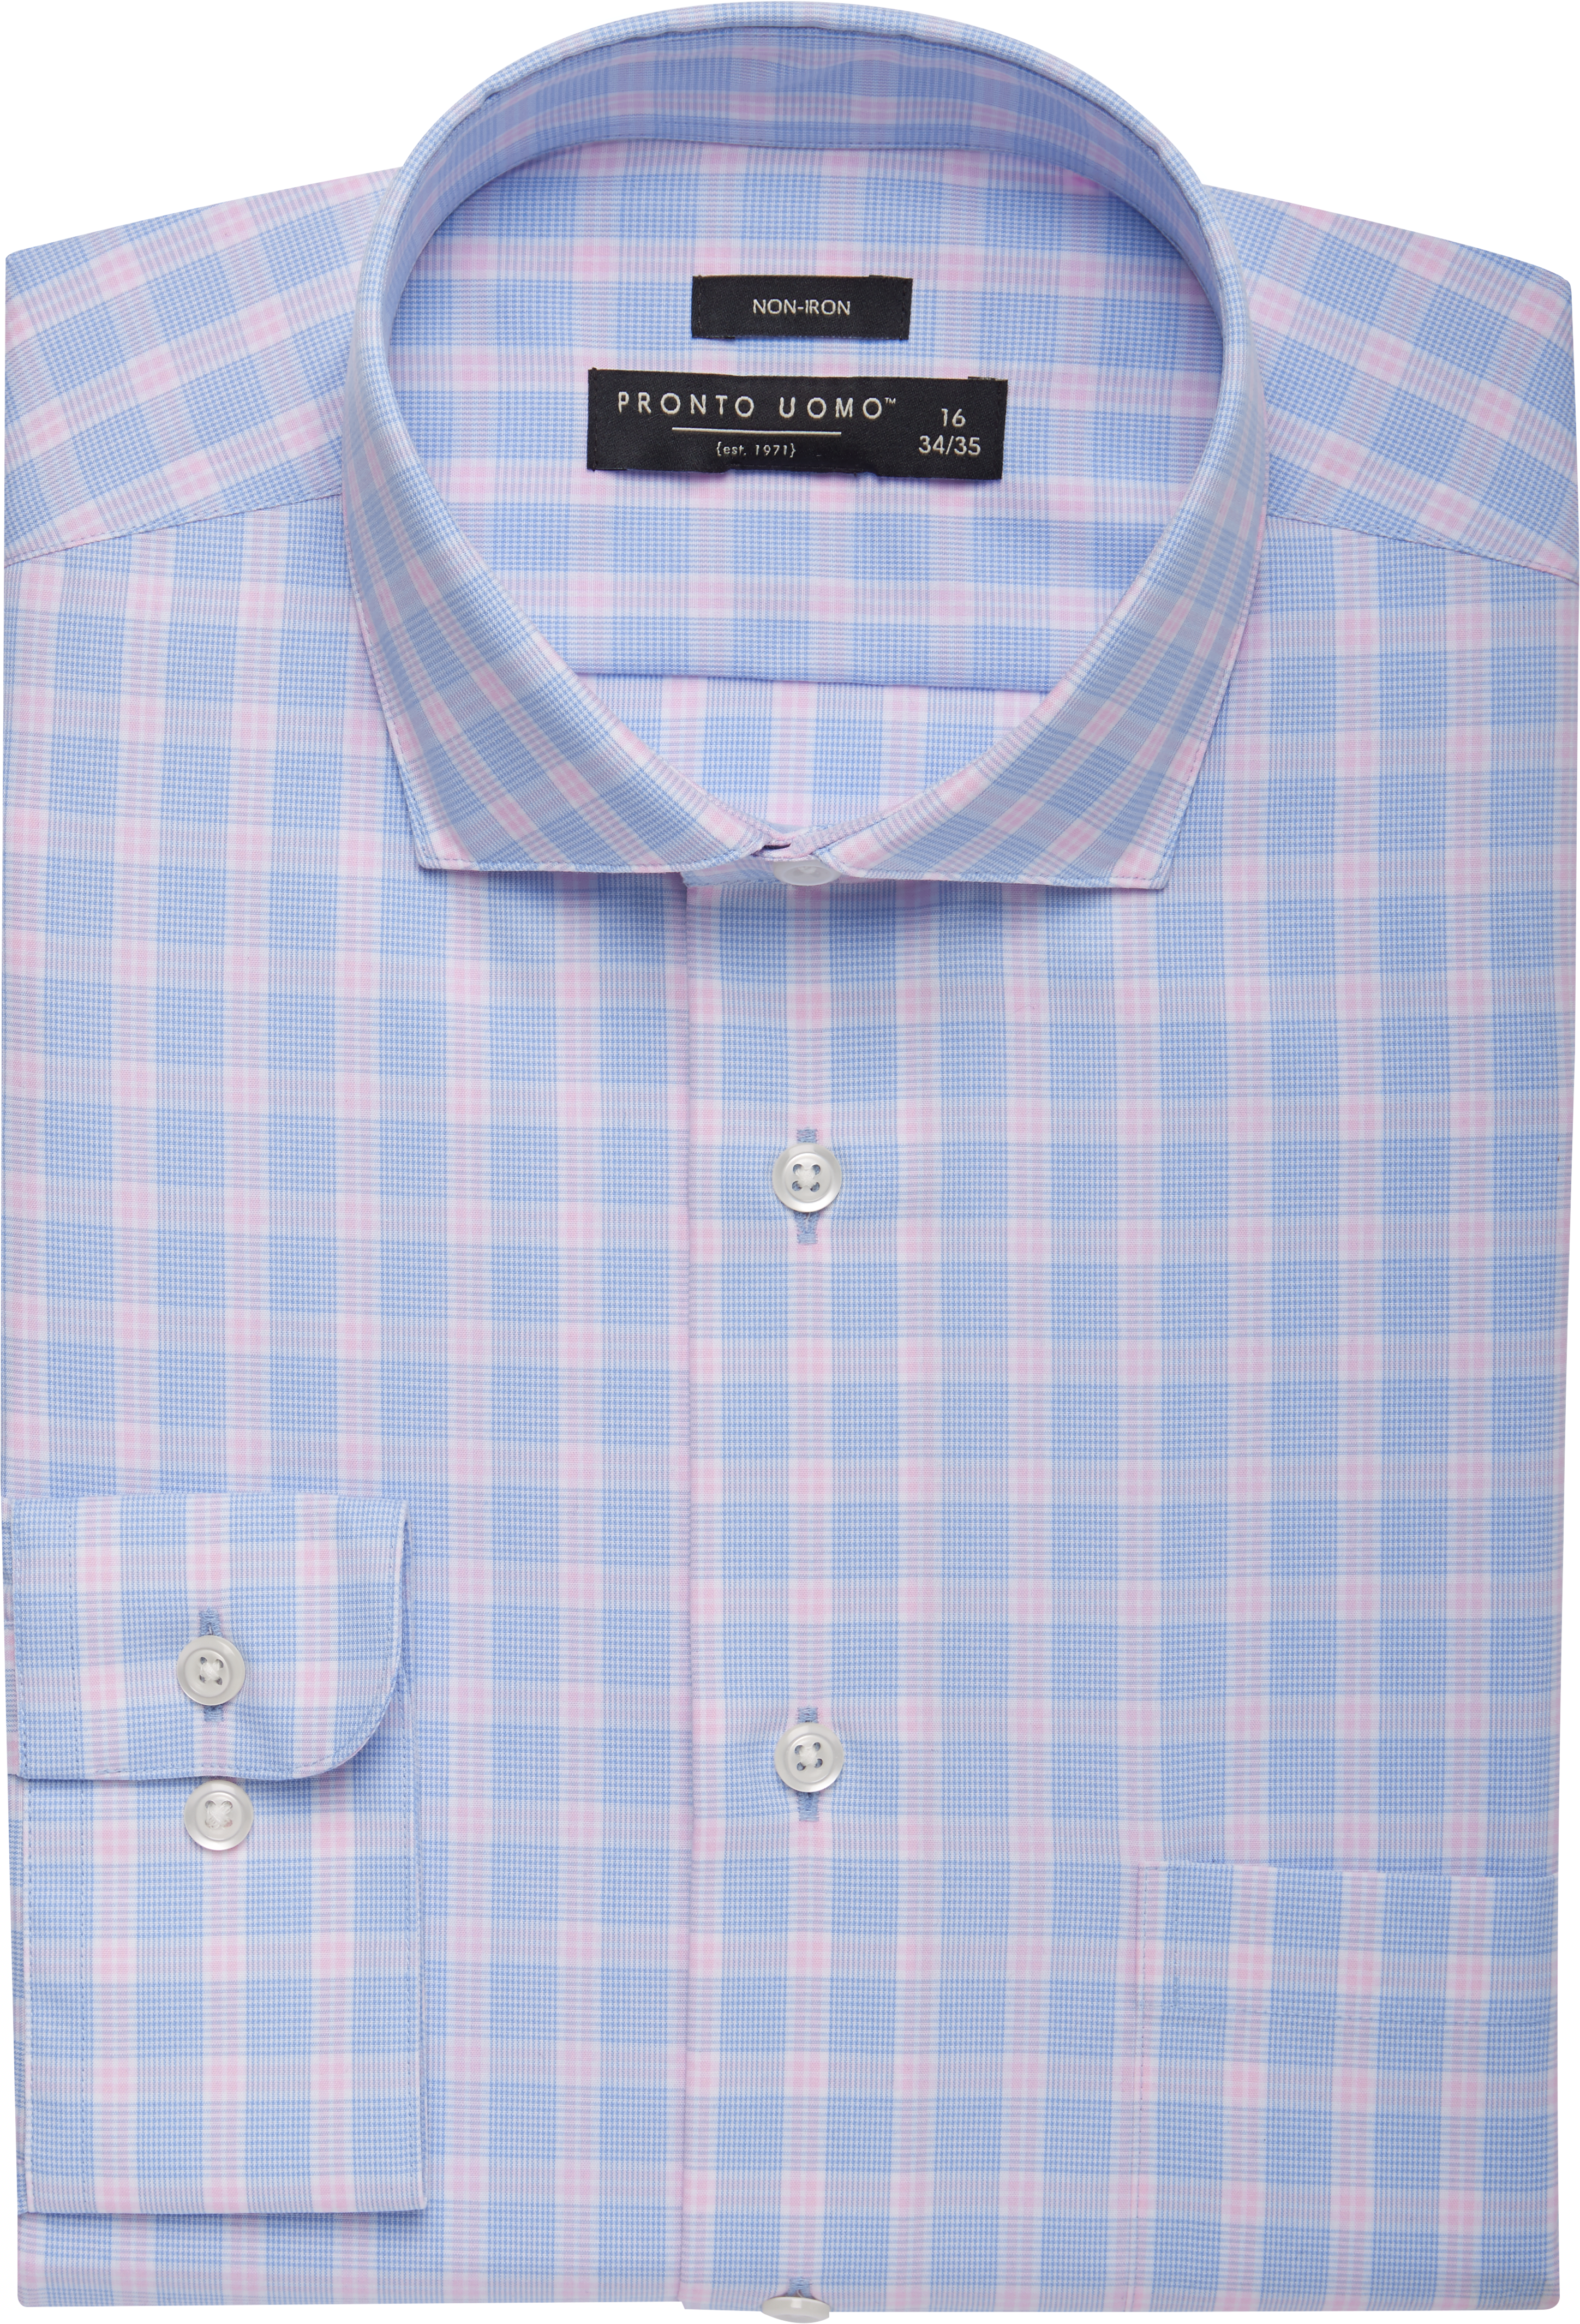 Pronto Uomo Blue & Pink Plaid Dress Shirt - Men's Sale | Men's Wearhouse